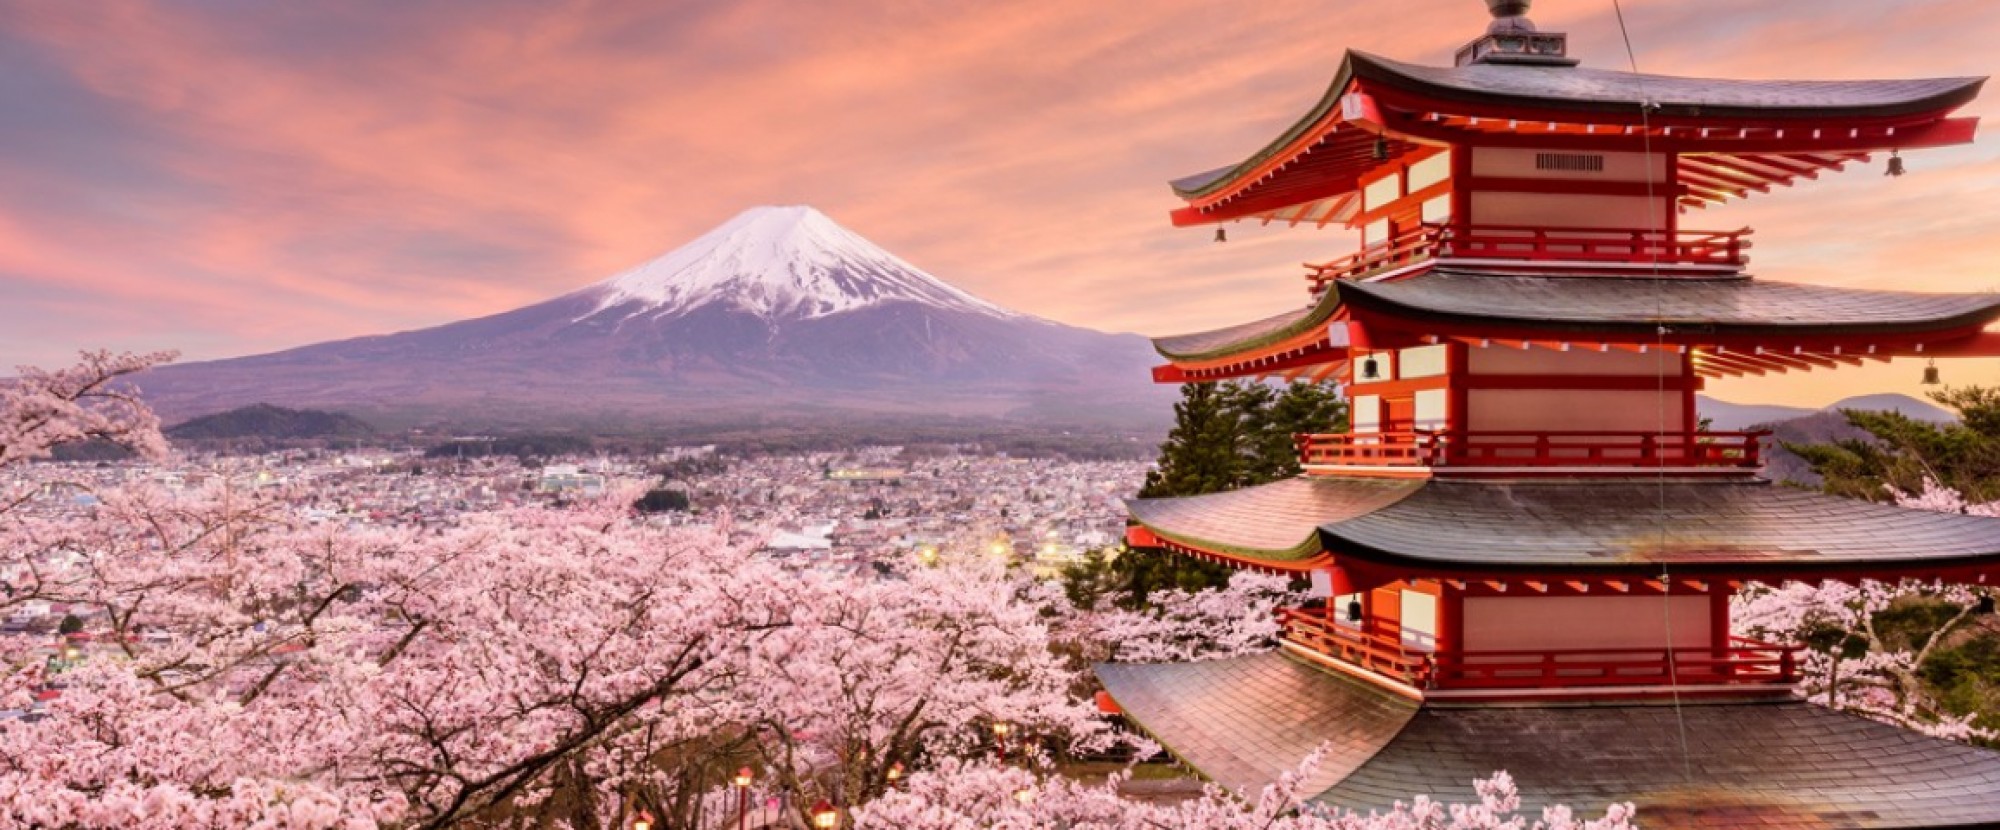 Tokyo Mt Fuji Hakone 5 Days 4 Nights Tokyo Japan Land Only Tour Af Travel